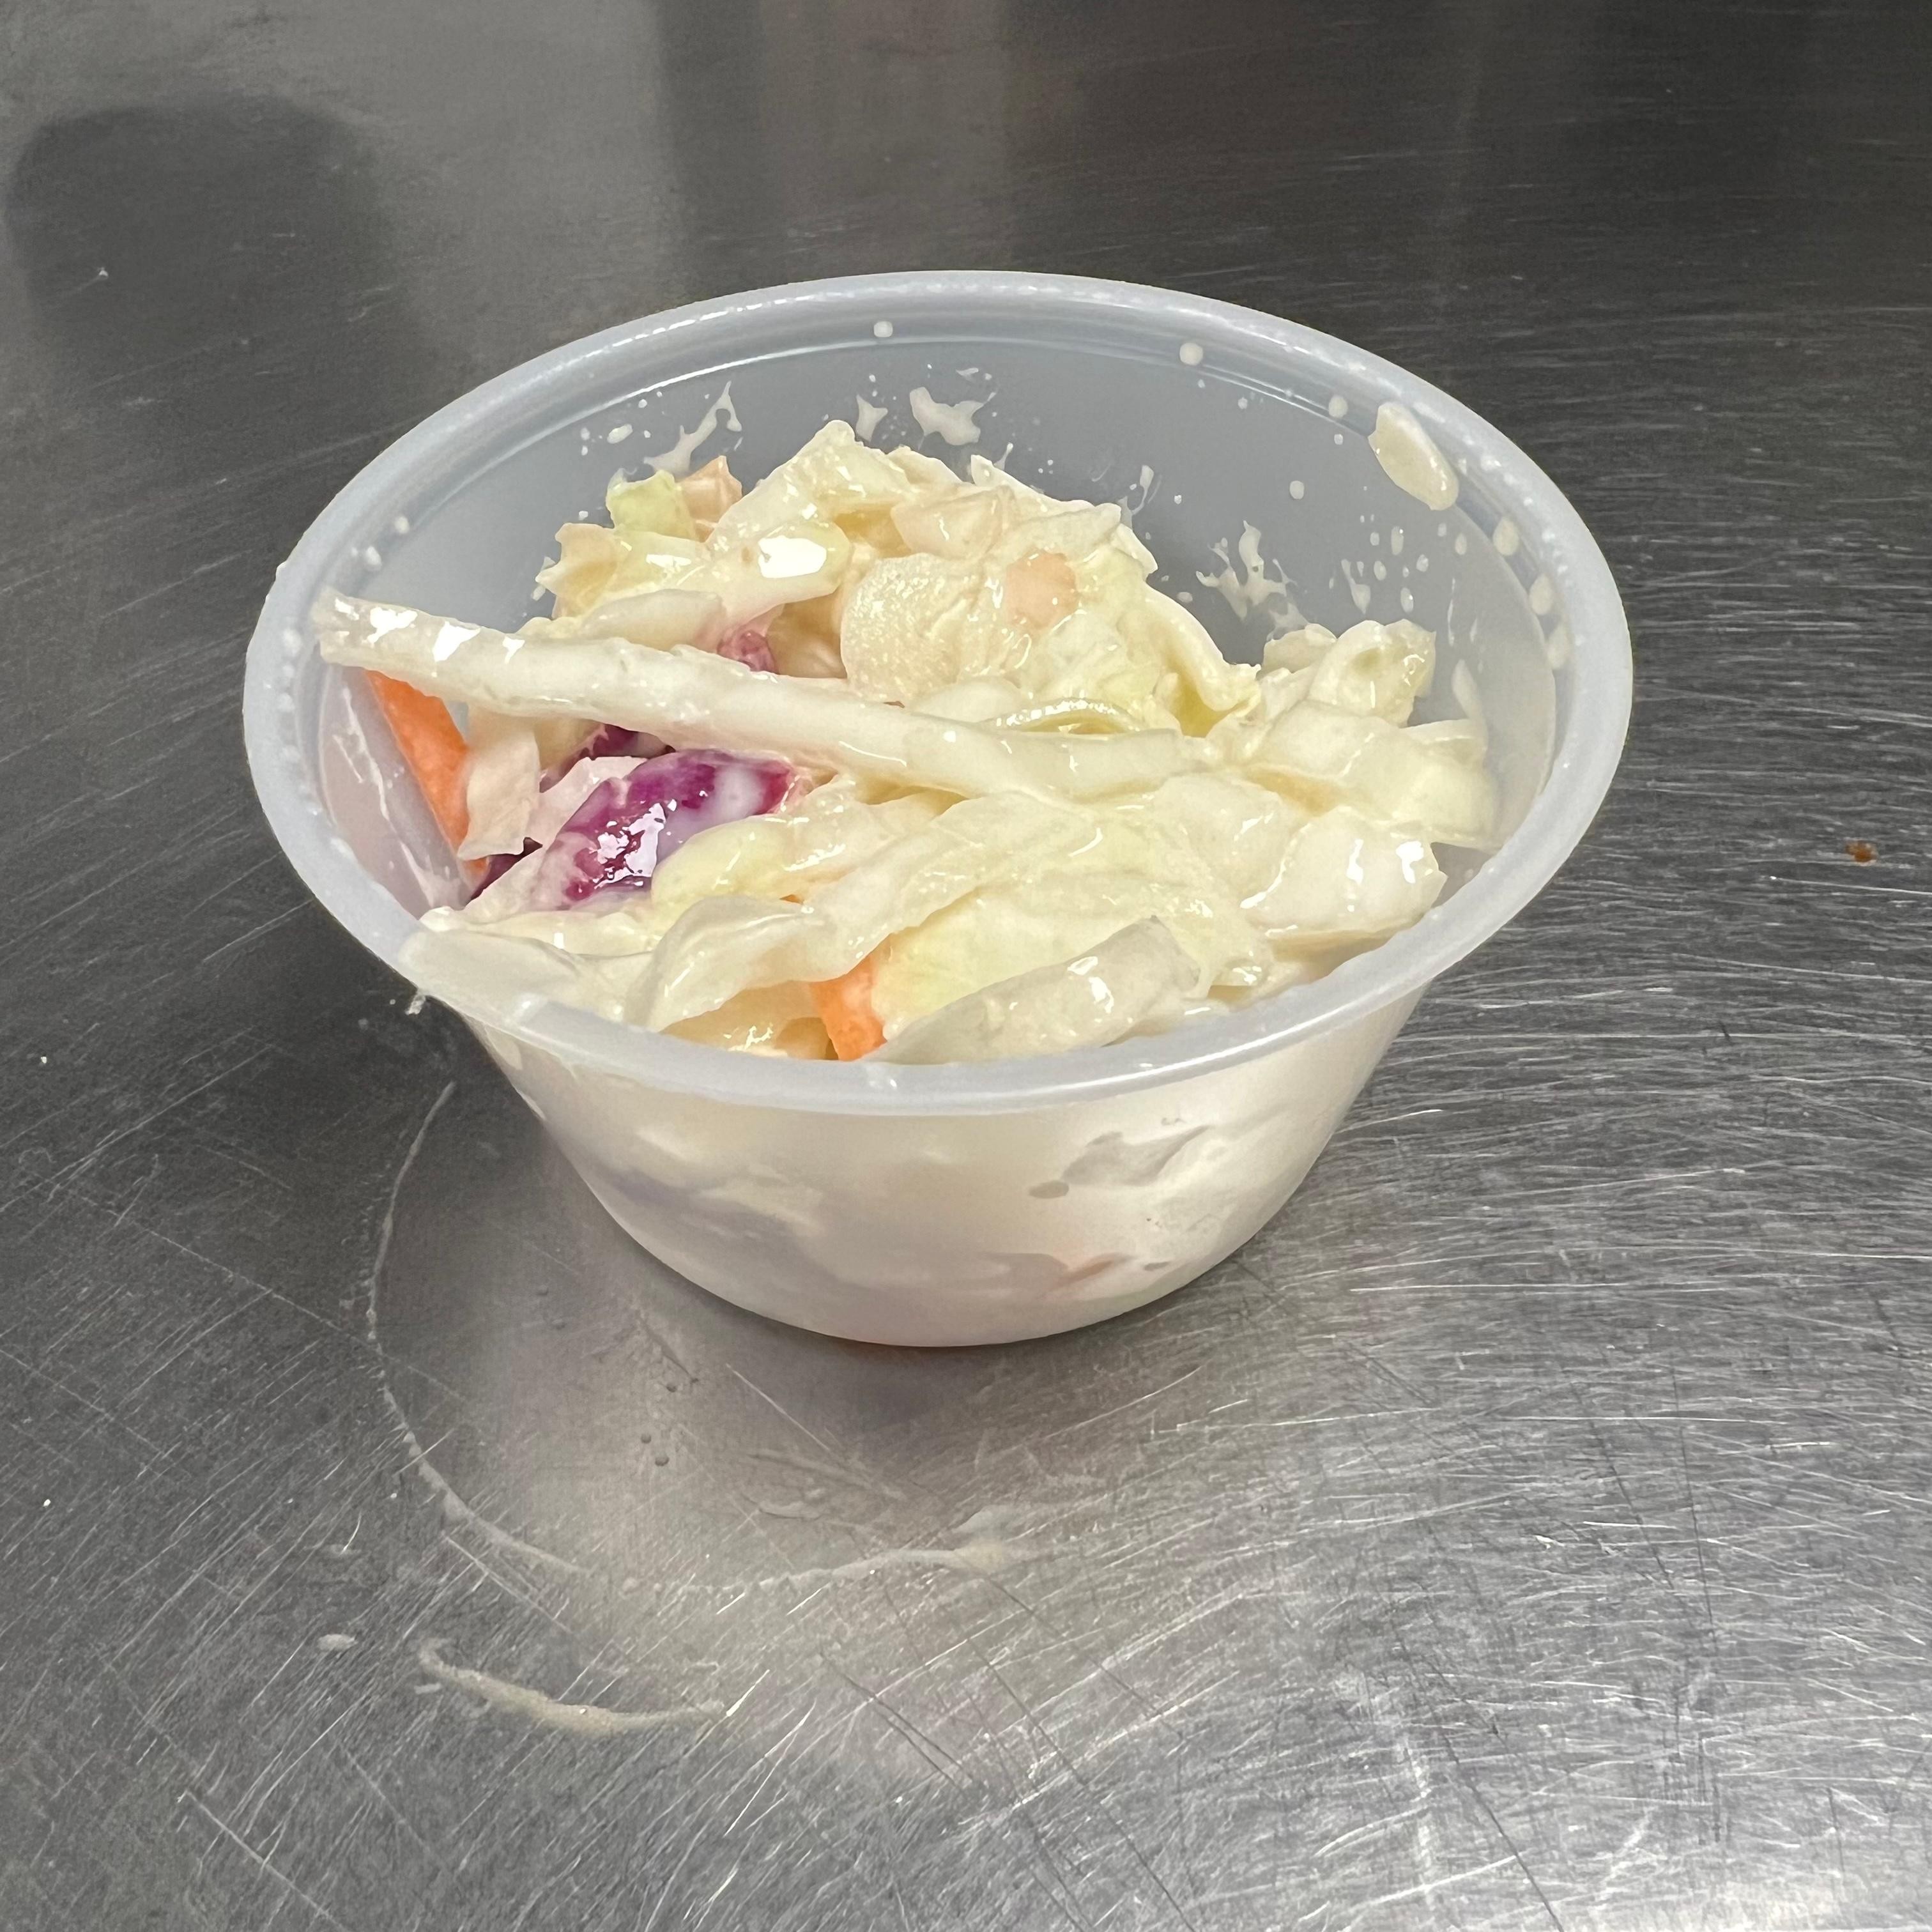 Side coleslaw